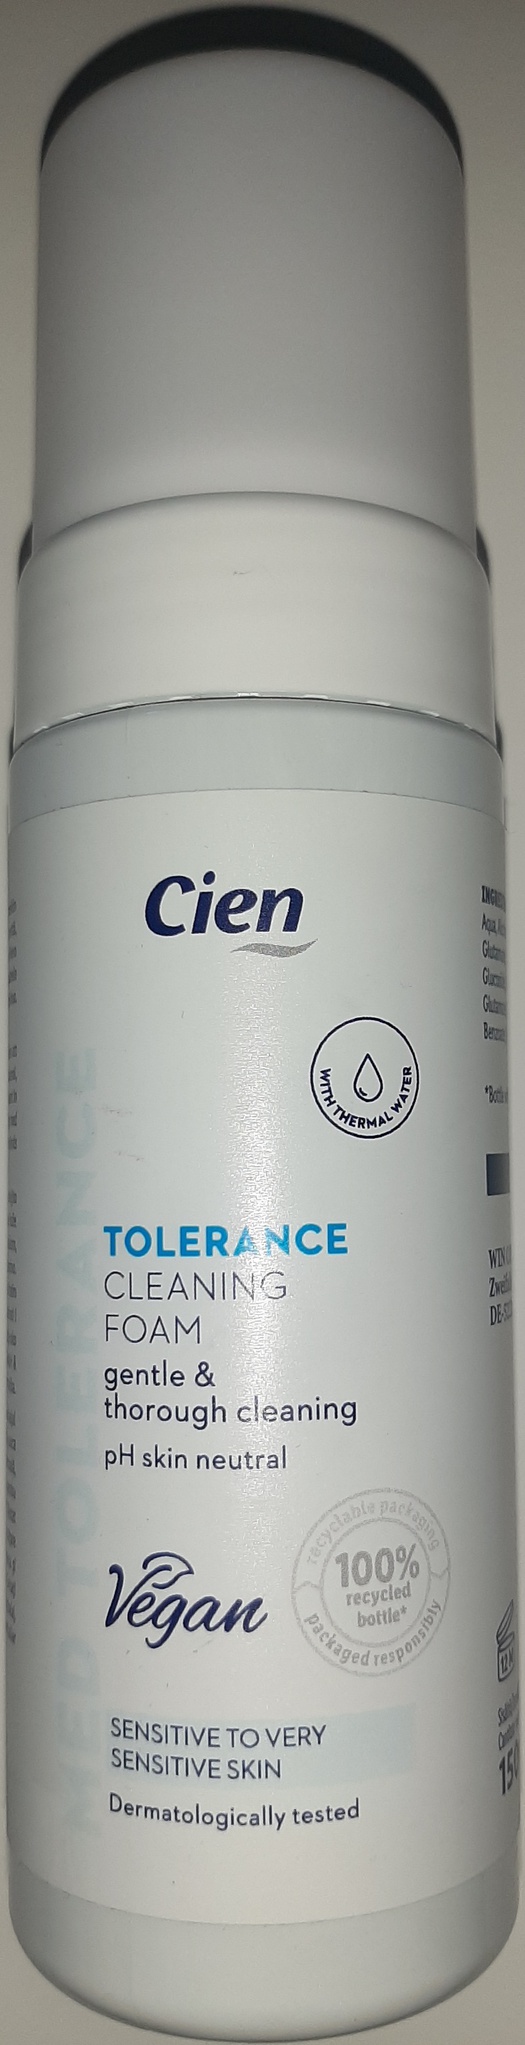 Cien Tolerance Cleansing Foam